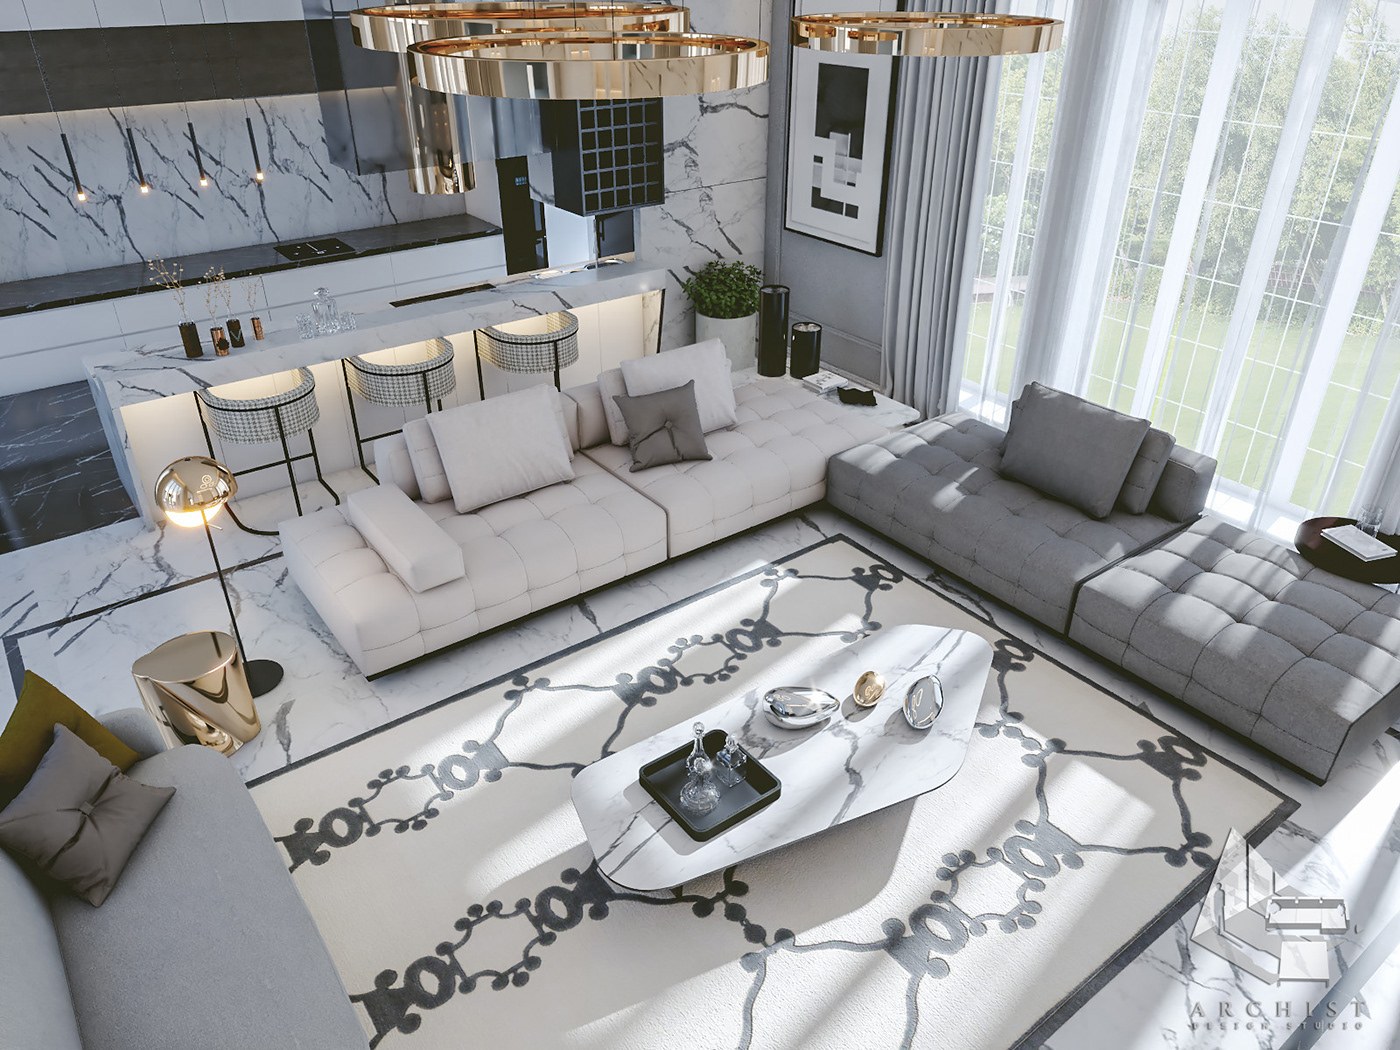 archist dubai egypt kitchen livingroom modern Residence UAE White